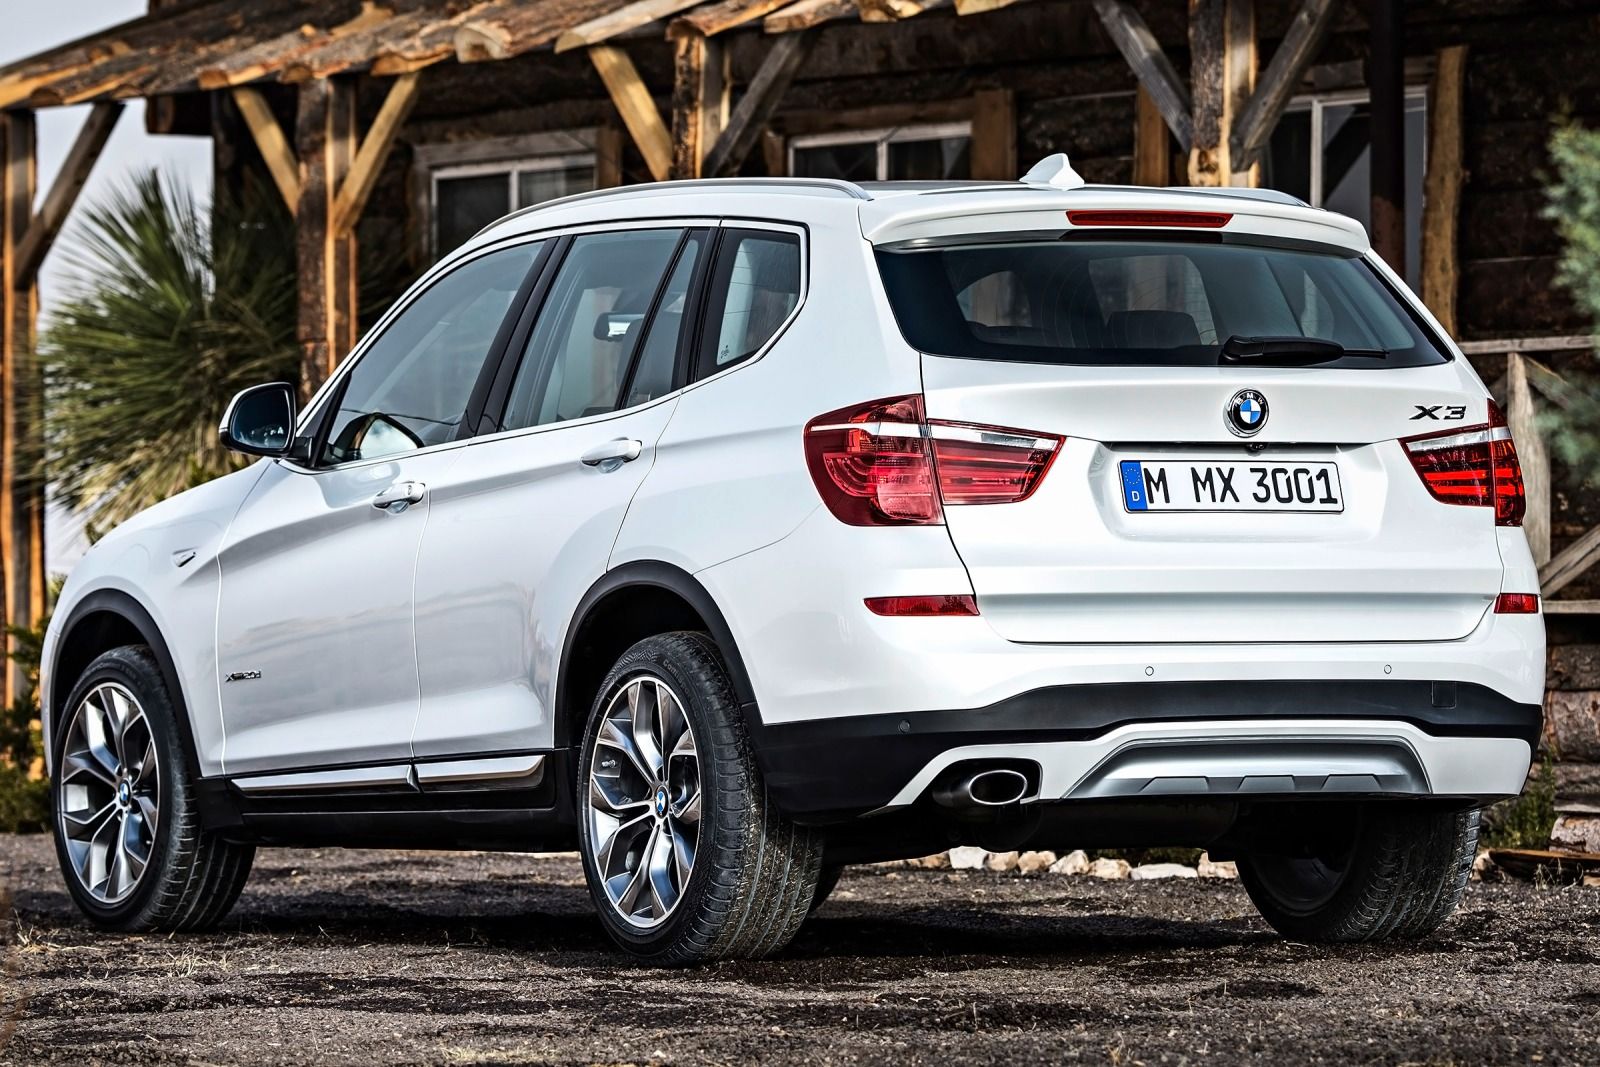 BMW đưa ra 2 tùy chọn bộ truyền lái cho X3, cả 6 xi-lanh và tự động 8 cấp